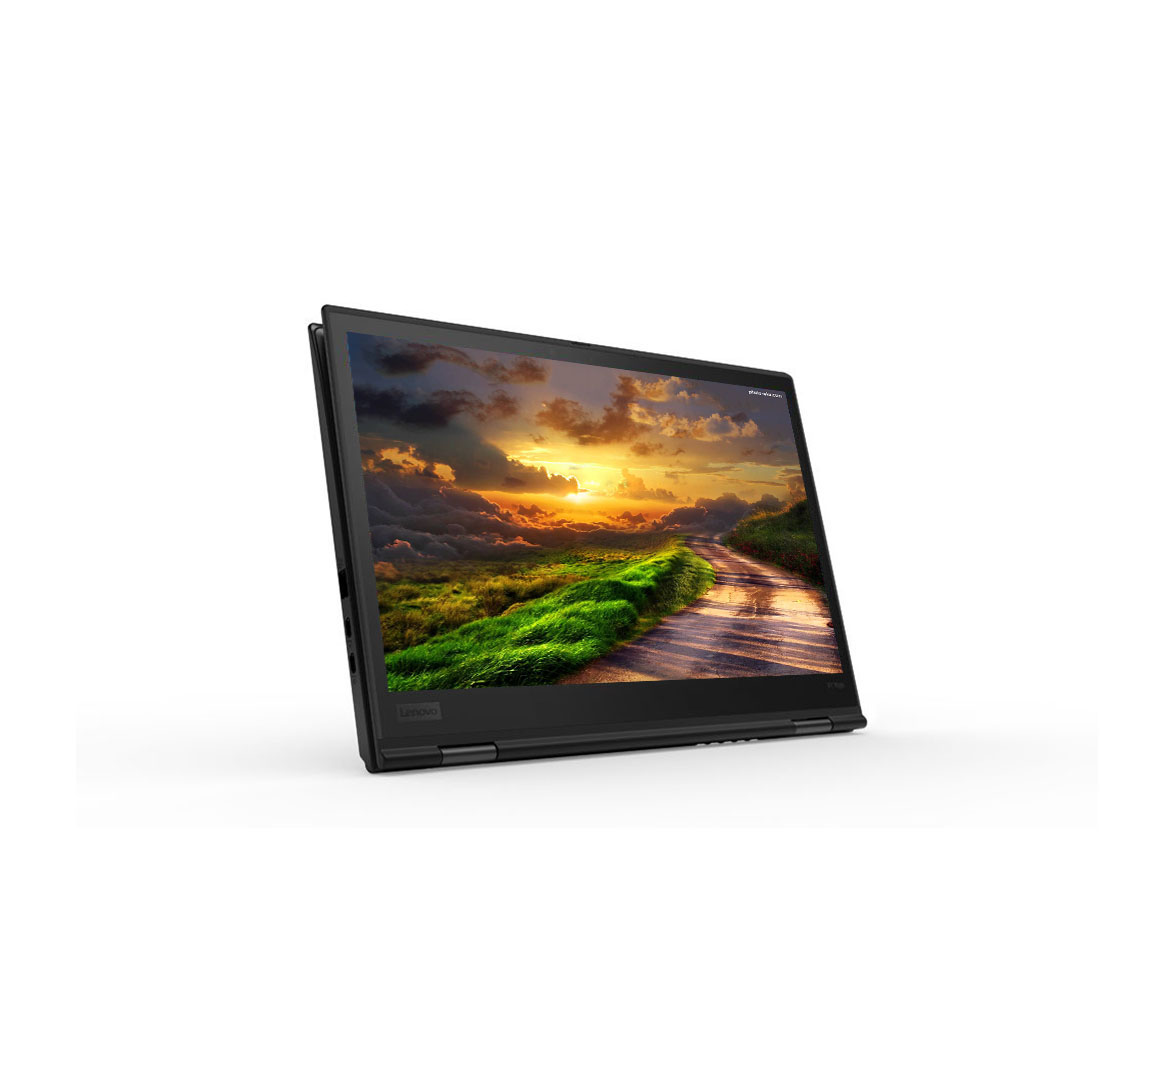 Lenovo ThinkPad x1 yoga, Intel Core i5-8th Generation CPU, 8GB RAM